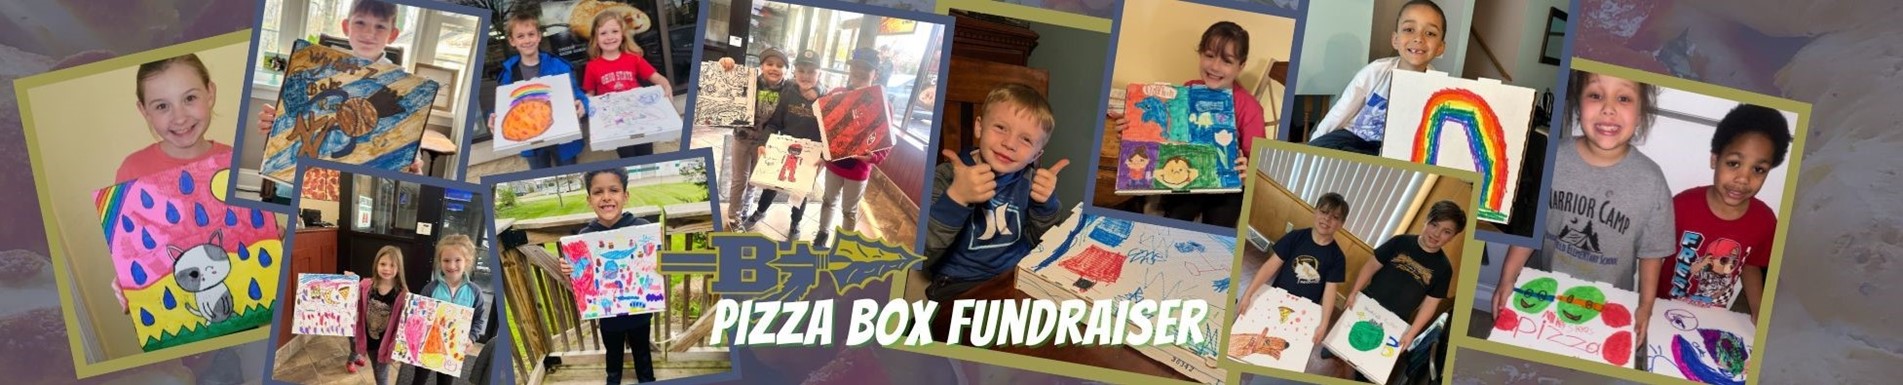 Pizza box fundraiser